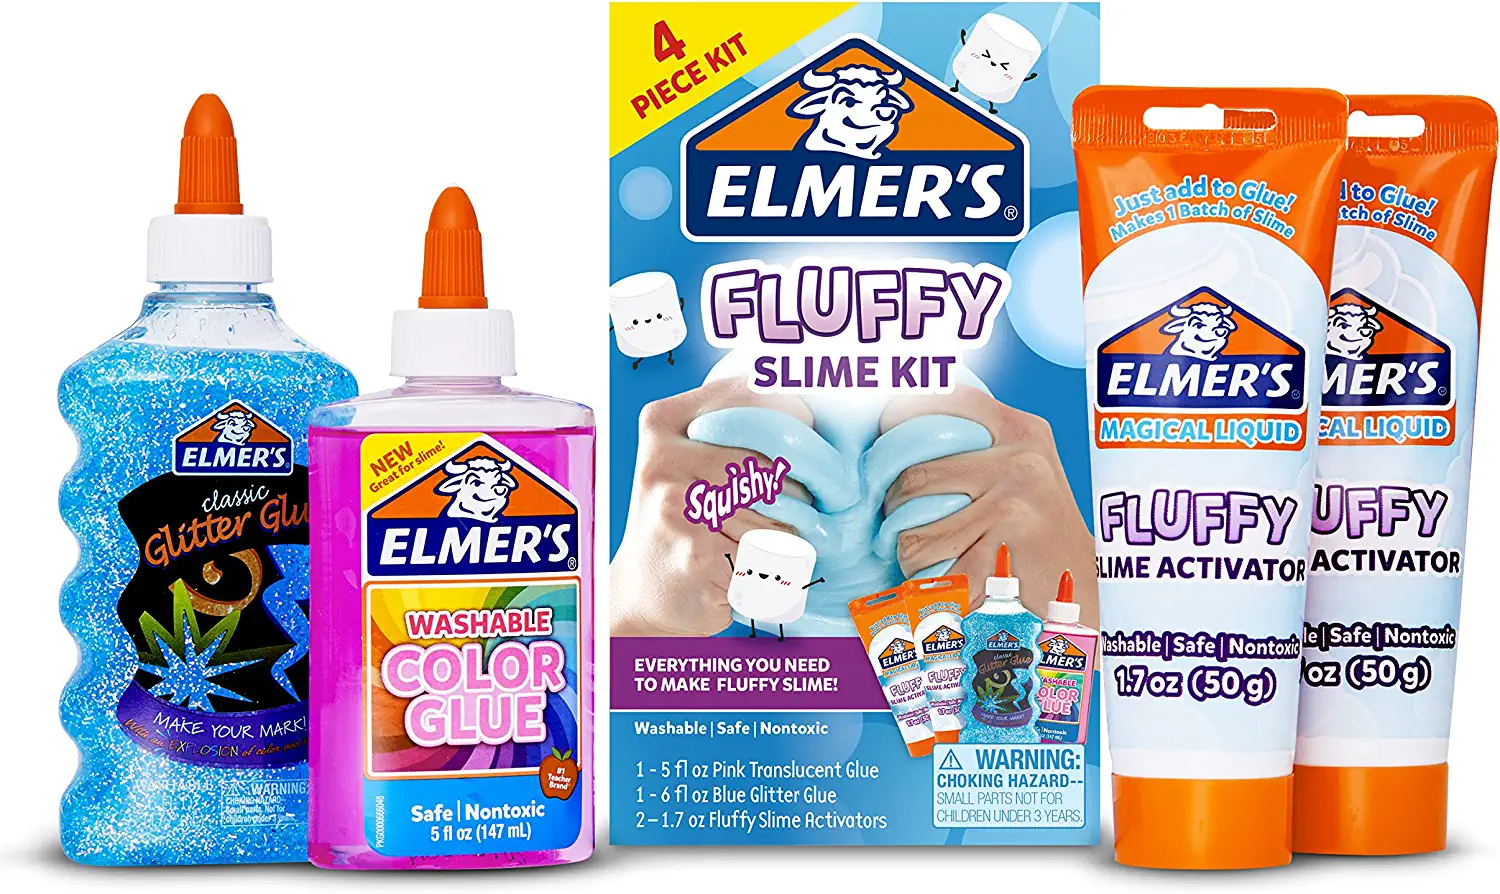 Elmer’s Fluffy Slime Kit